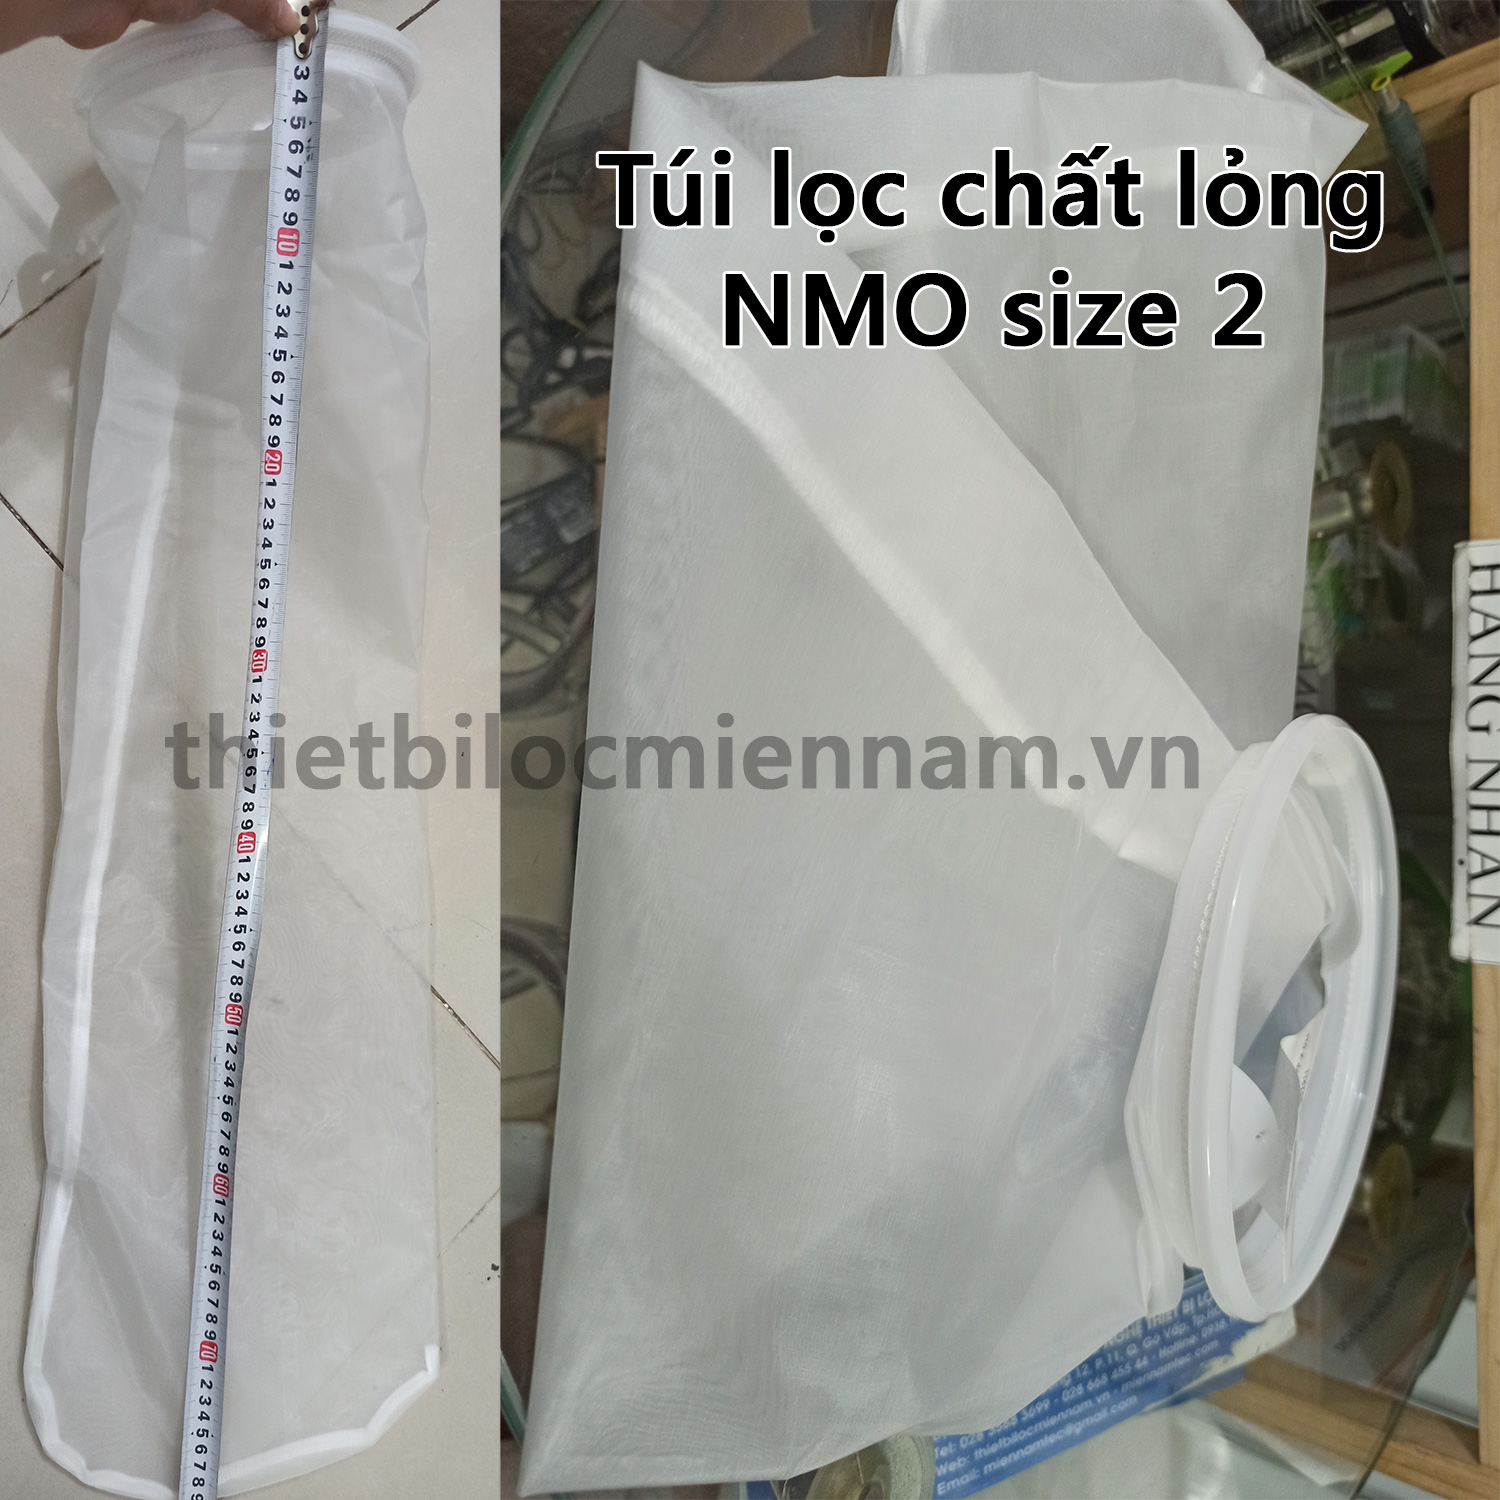 Túi lọc NMO (Nylon mesh) size 2 (25; 50; 100; 150; 200; 250; 300; 500 micron)